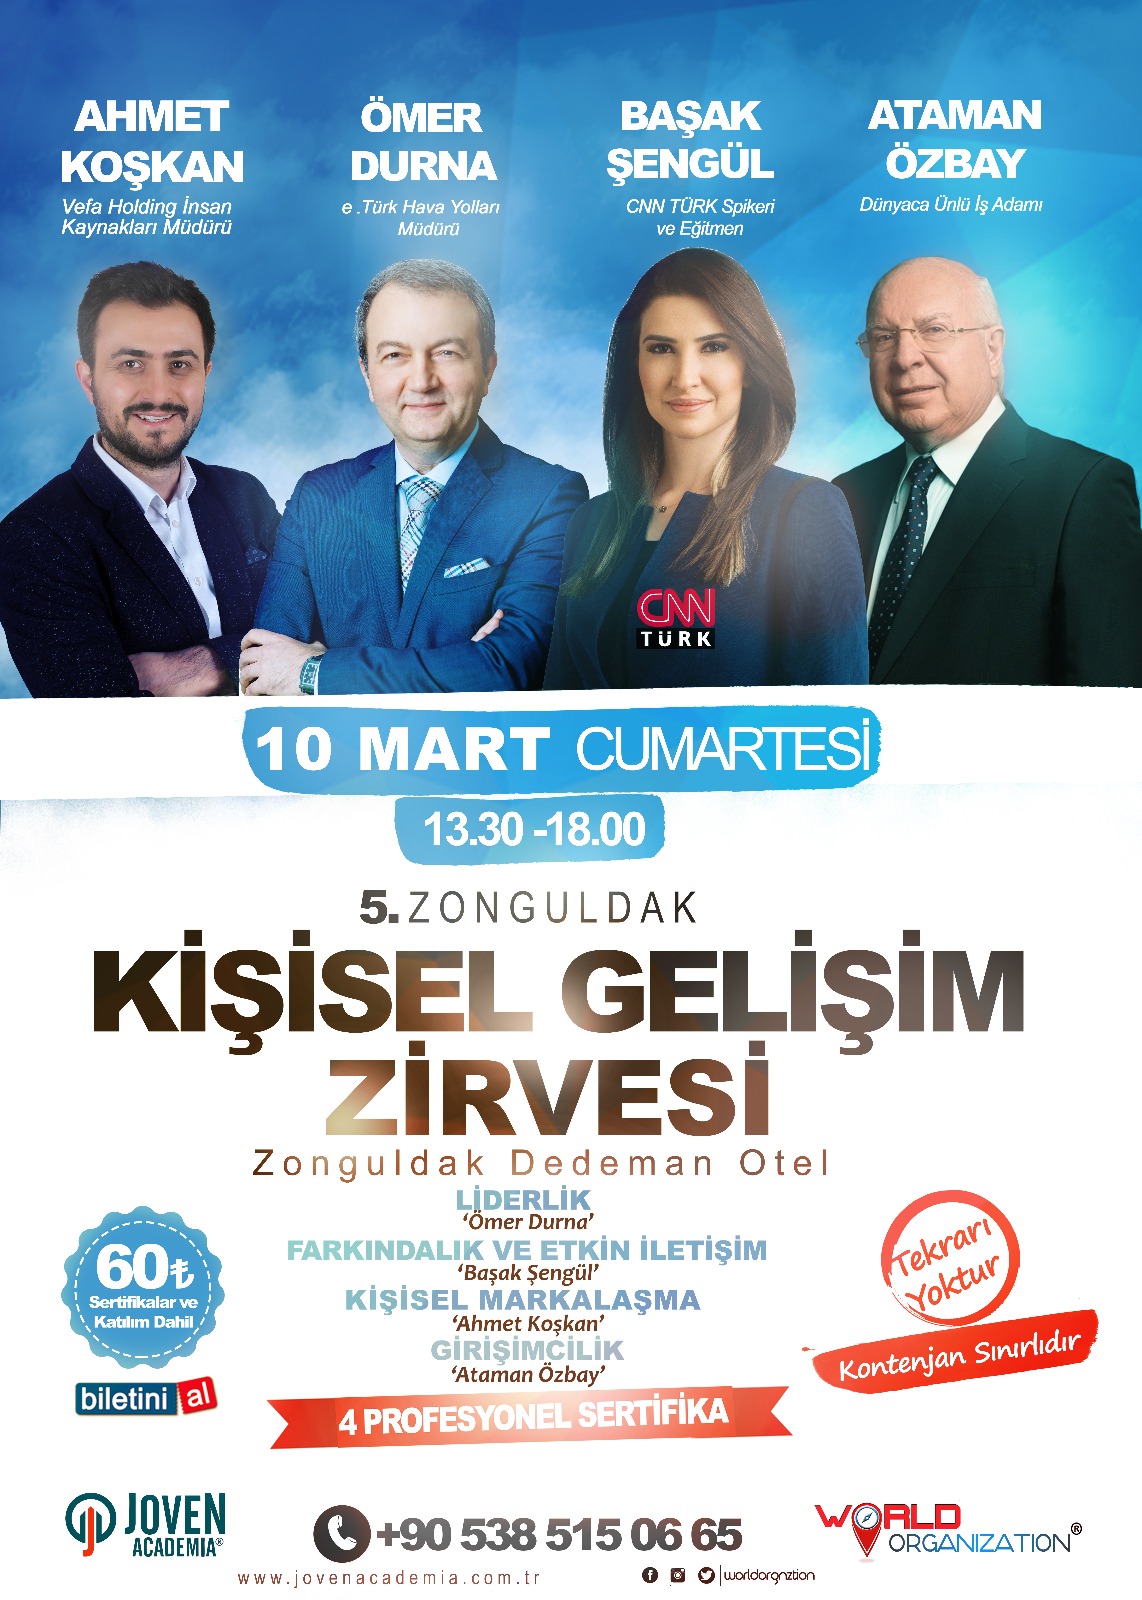 Kişisel Gelişim Zirvesi 5 Zonguldak 2018